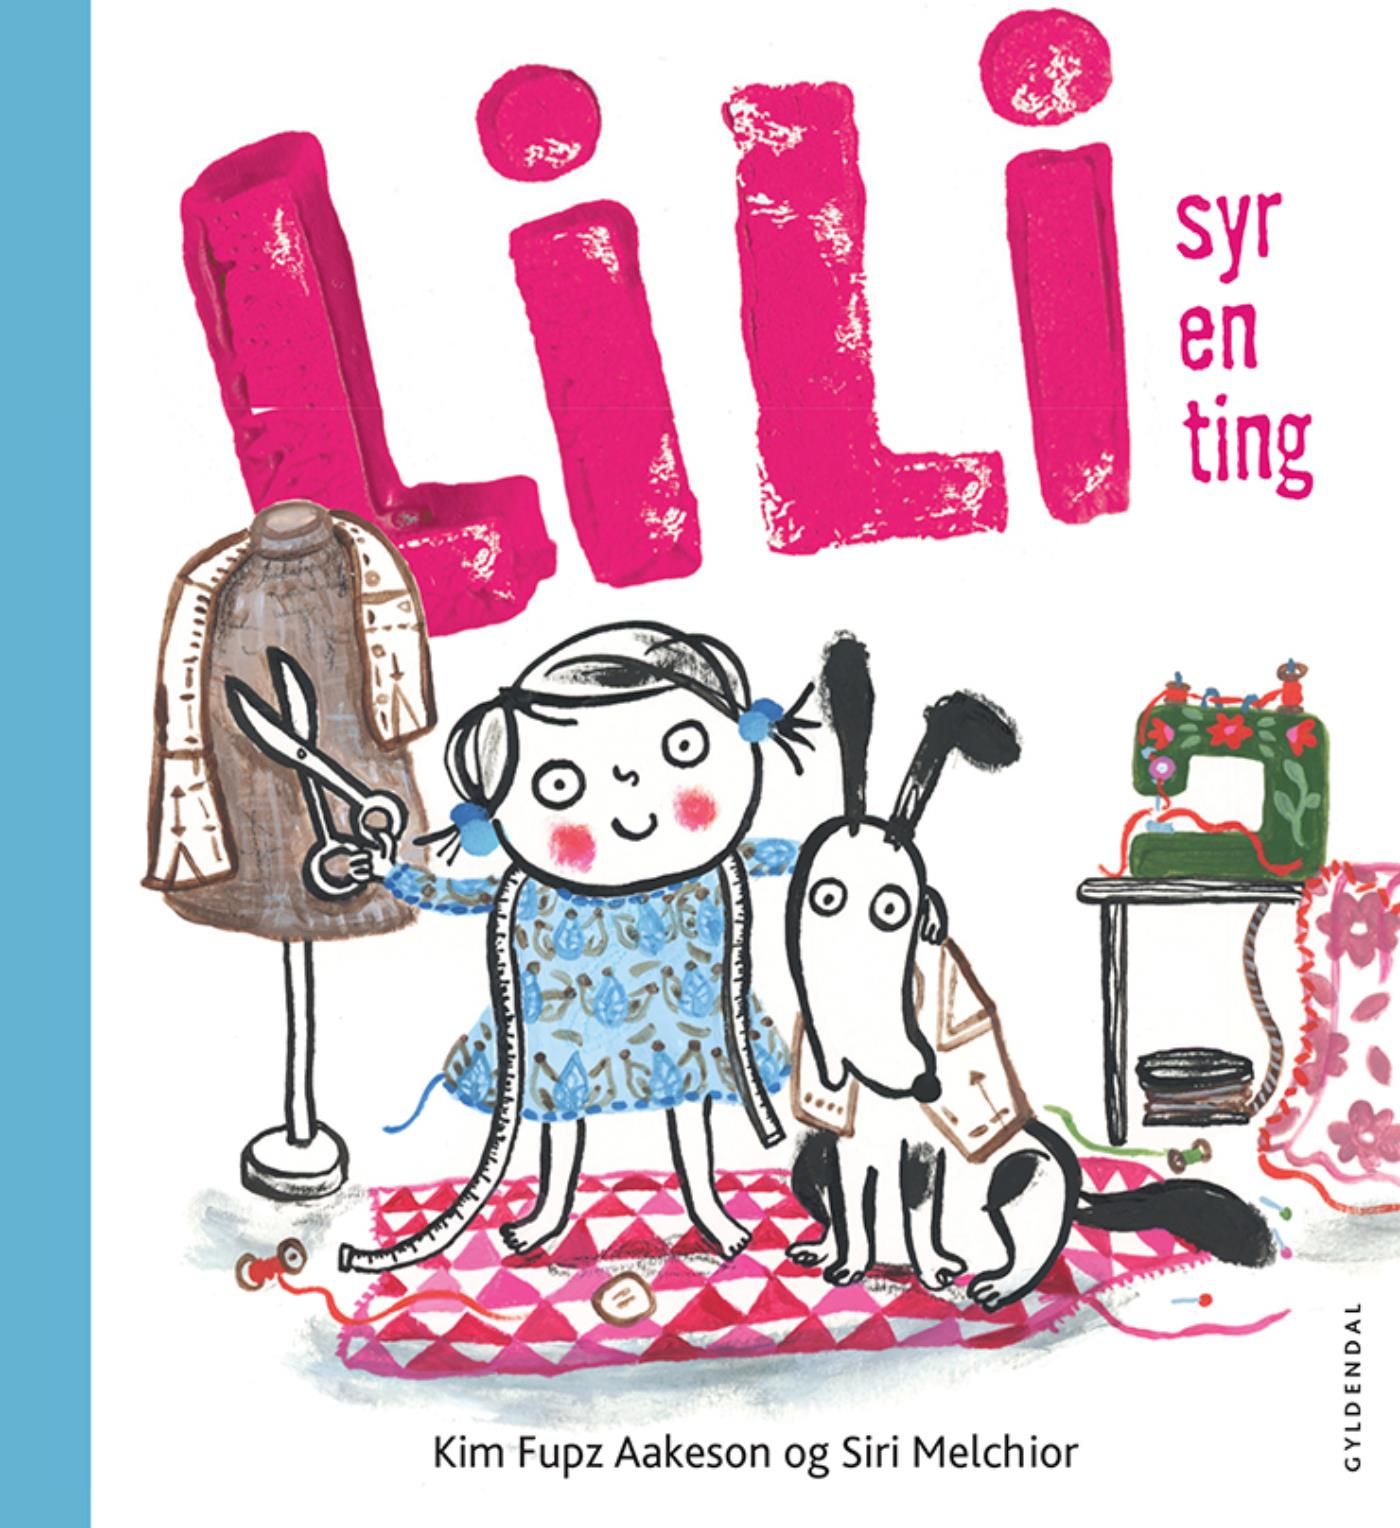 Lili syr en ting - Lyt&læs, e-bog af Siri Melchior, Kim Fupz Aakeson